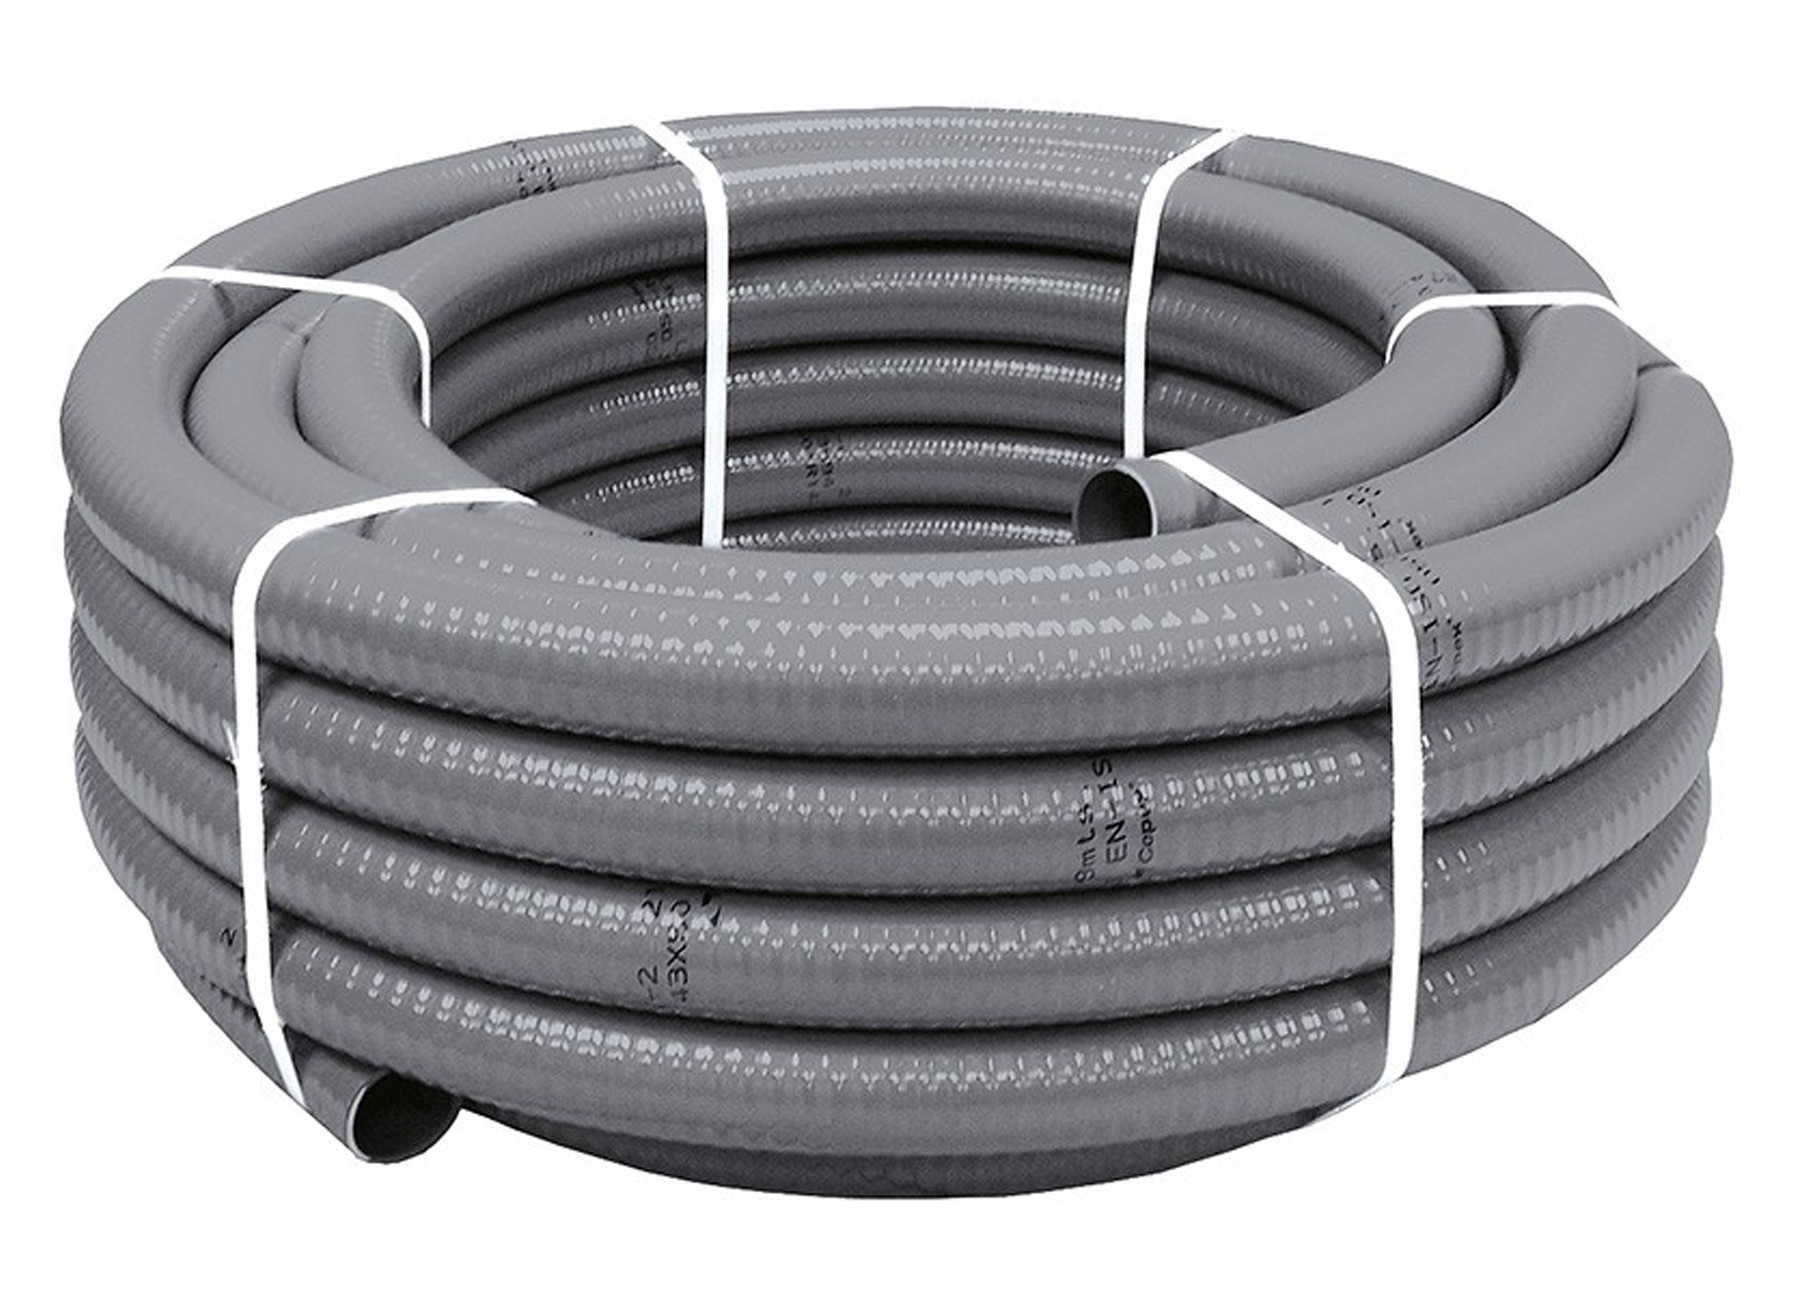 Tuyau Flexible Pvc Gris - sanitaire - materiel dinstallation sanitaire -  evacuation eaux sanitair - siphons et accessoires - tuyau flexible pvc gris